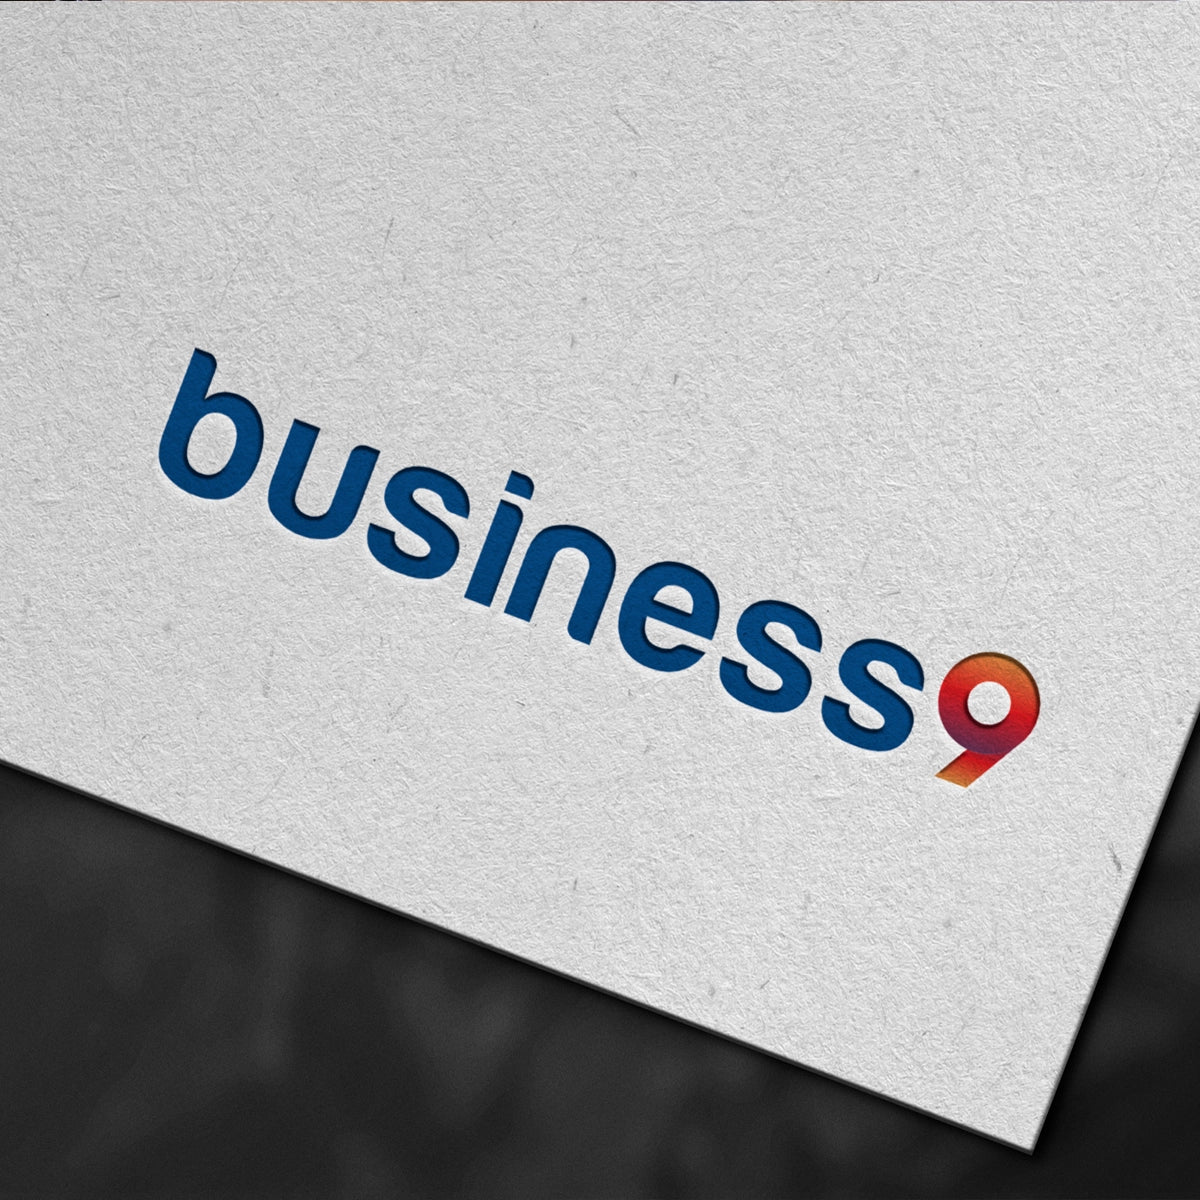 business9.com